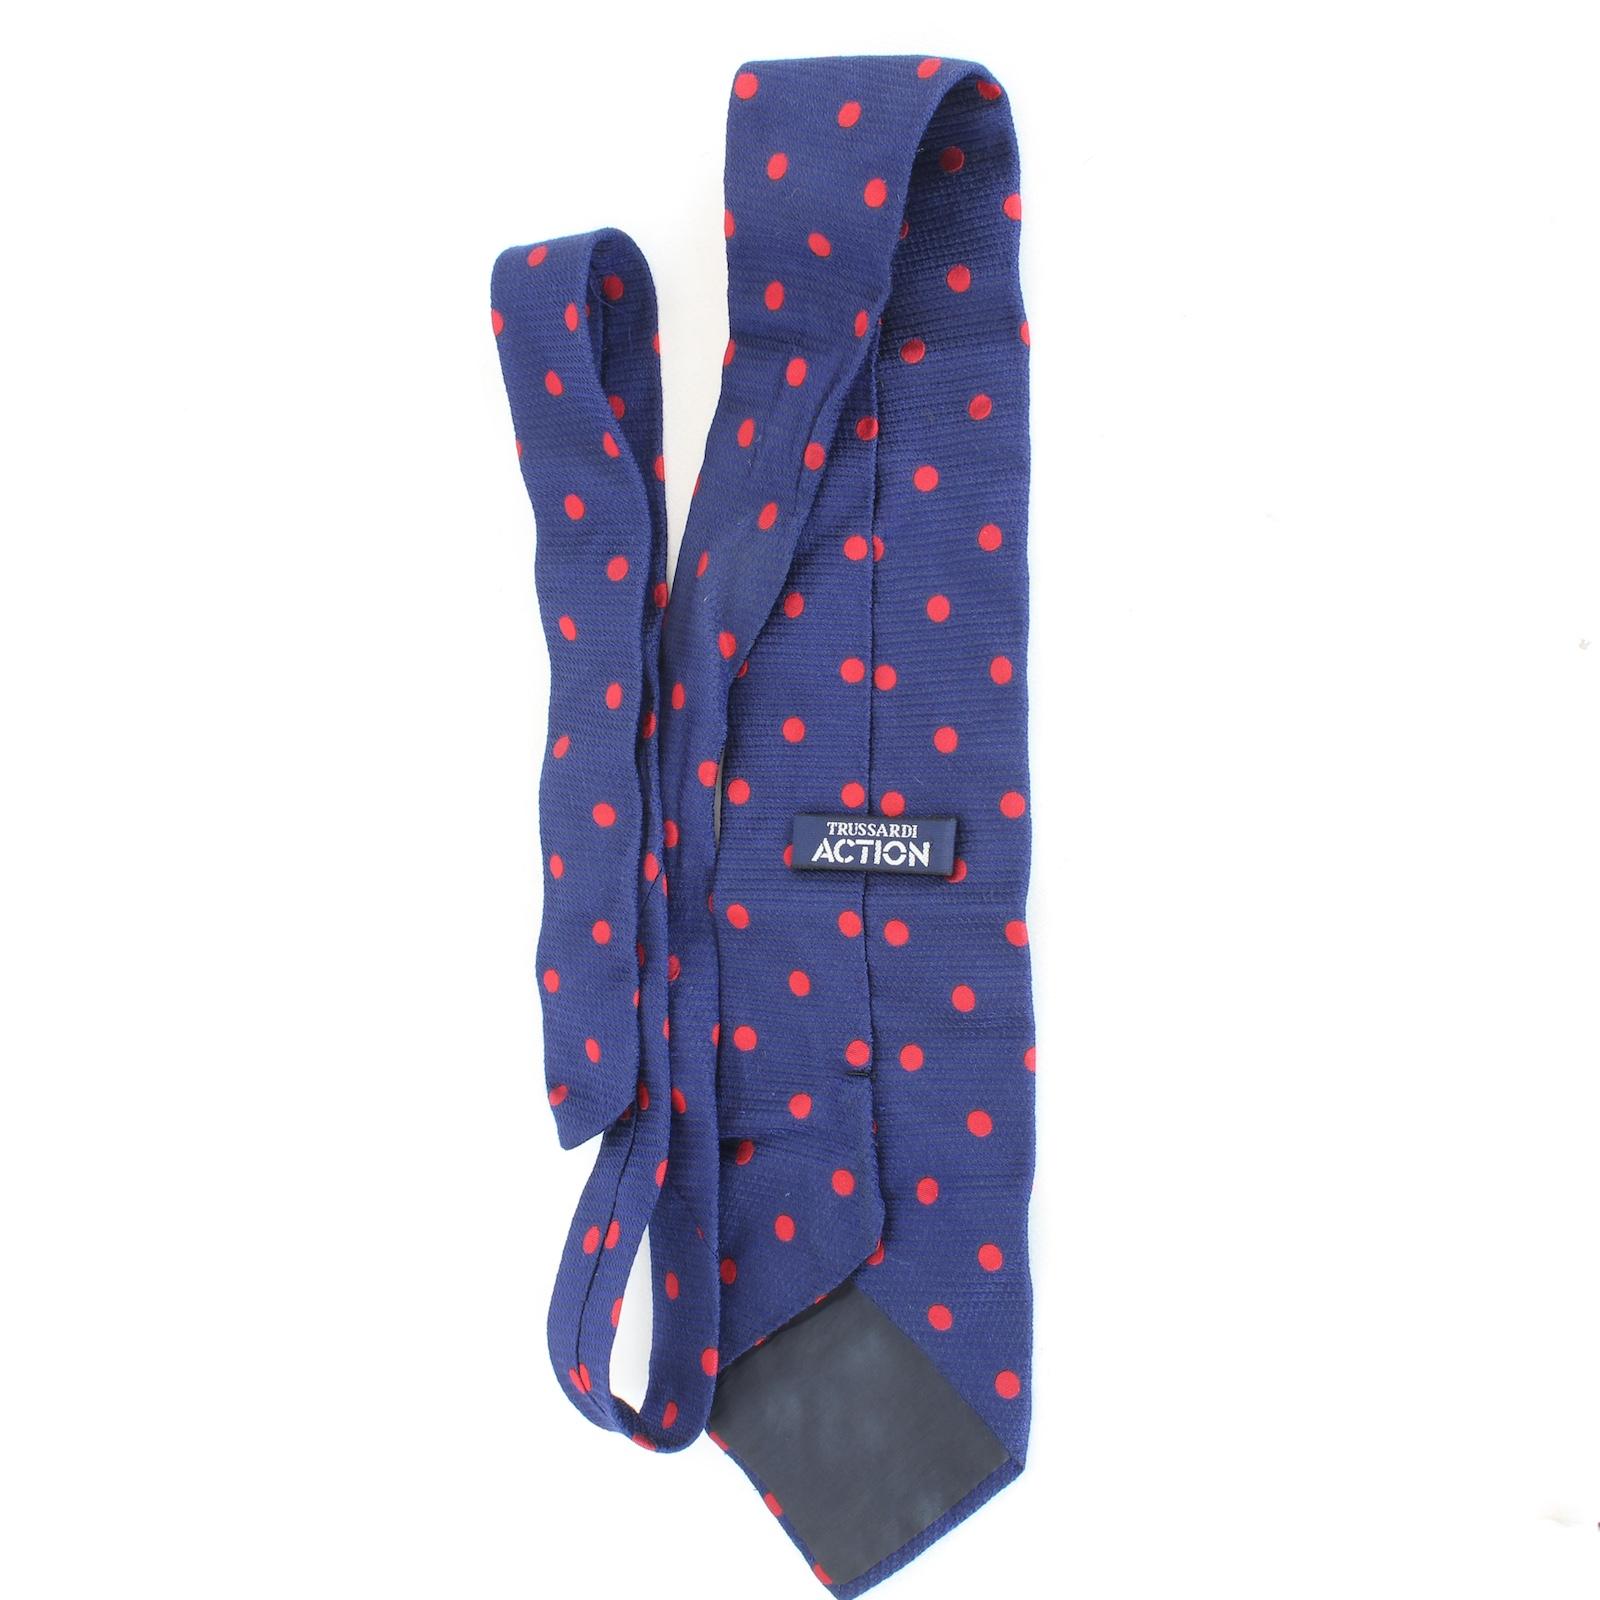 Cravate Pierre Cardin vintage des années 80. Bleu et rouge avec motif cachemire, 100% soie. Fabriqué en Italie.

Longueur : 138 cm
Largeur : 11 cm